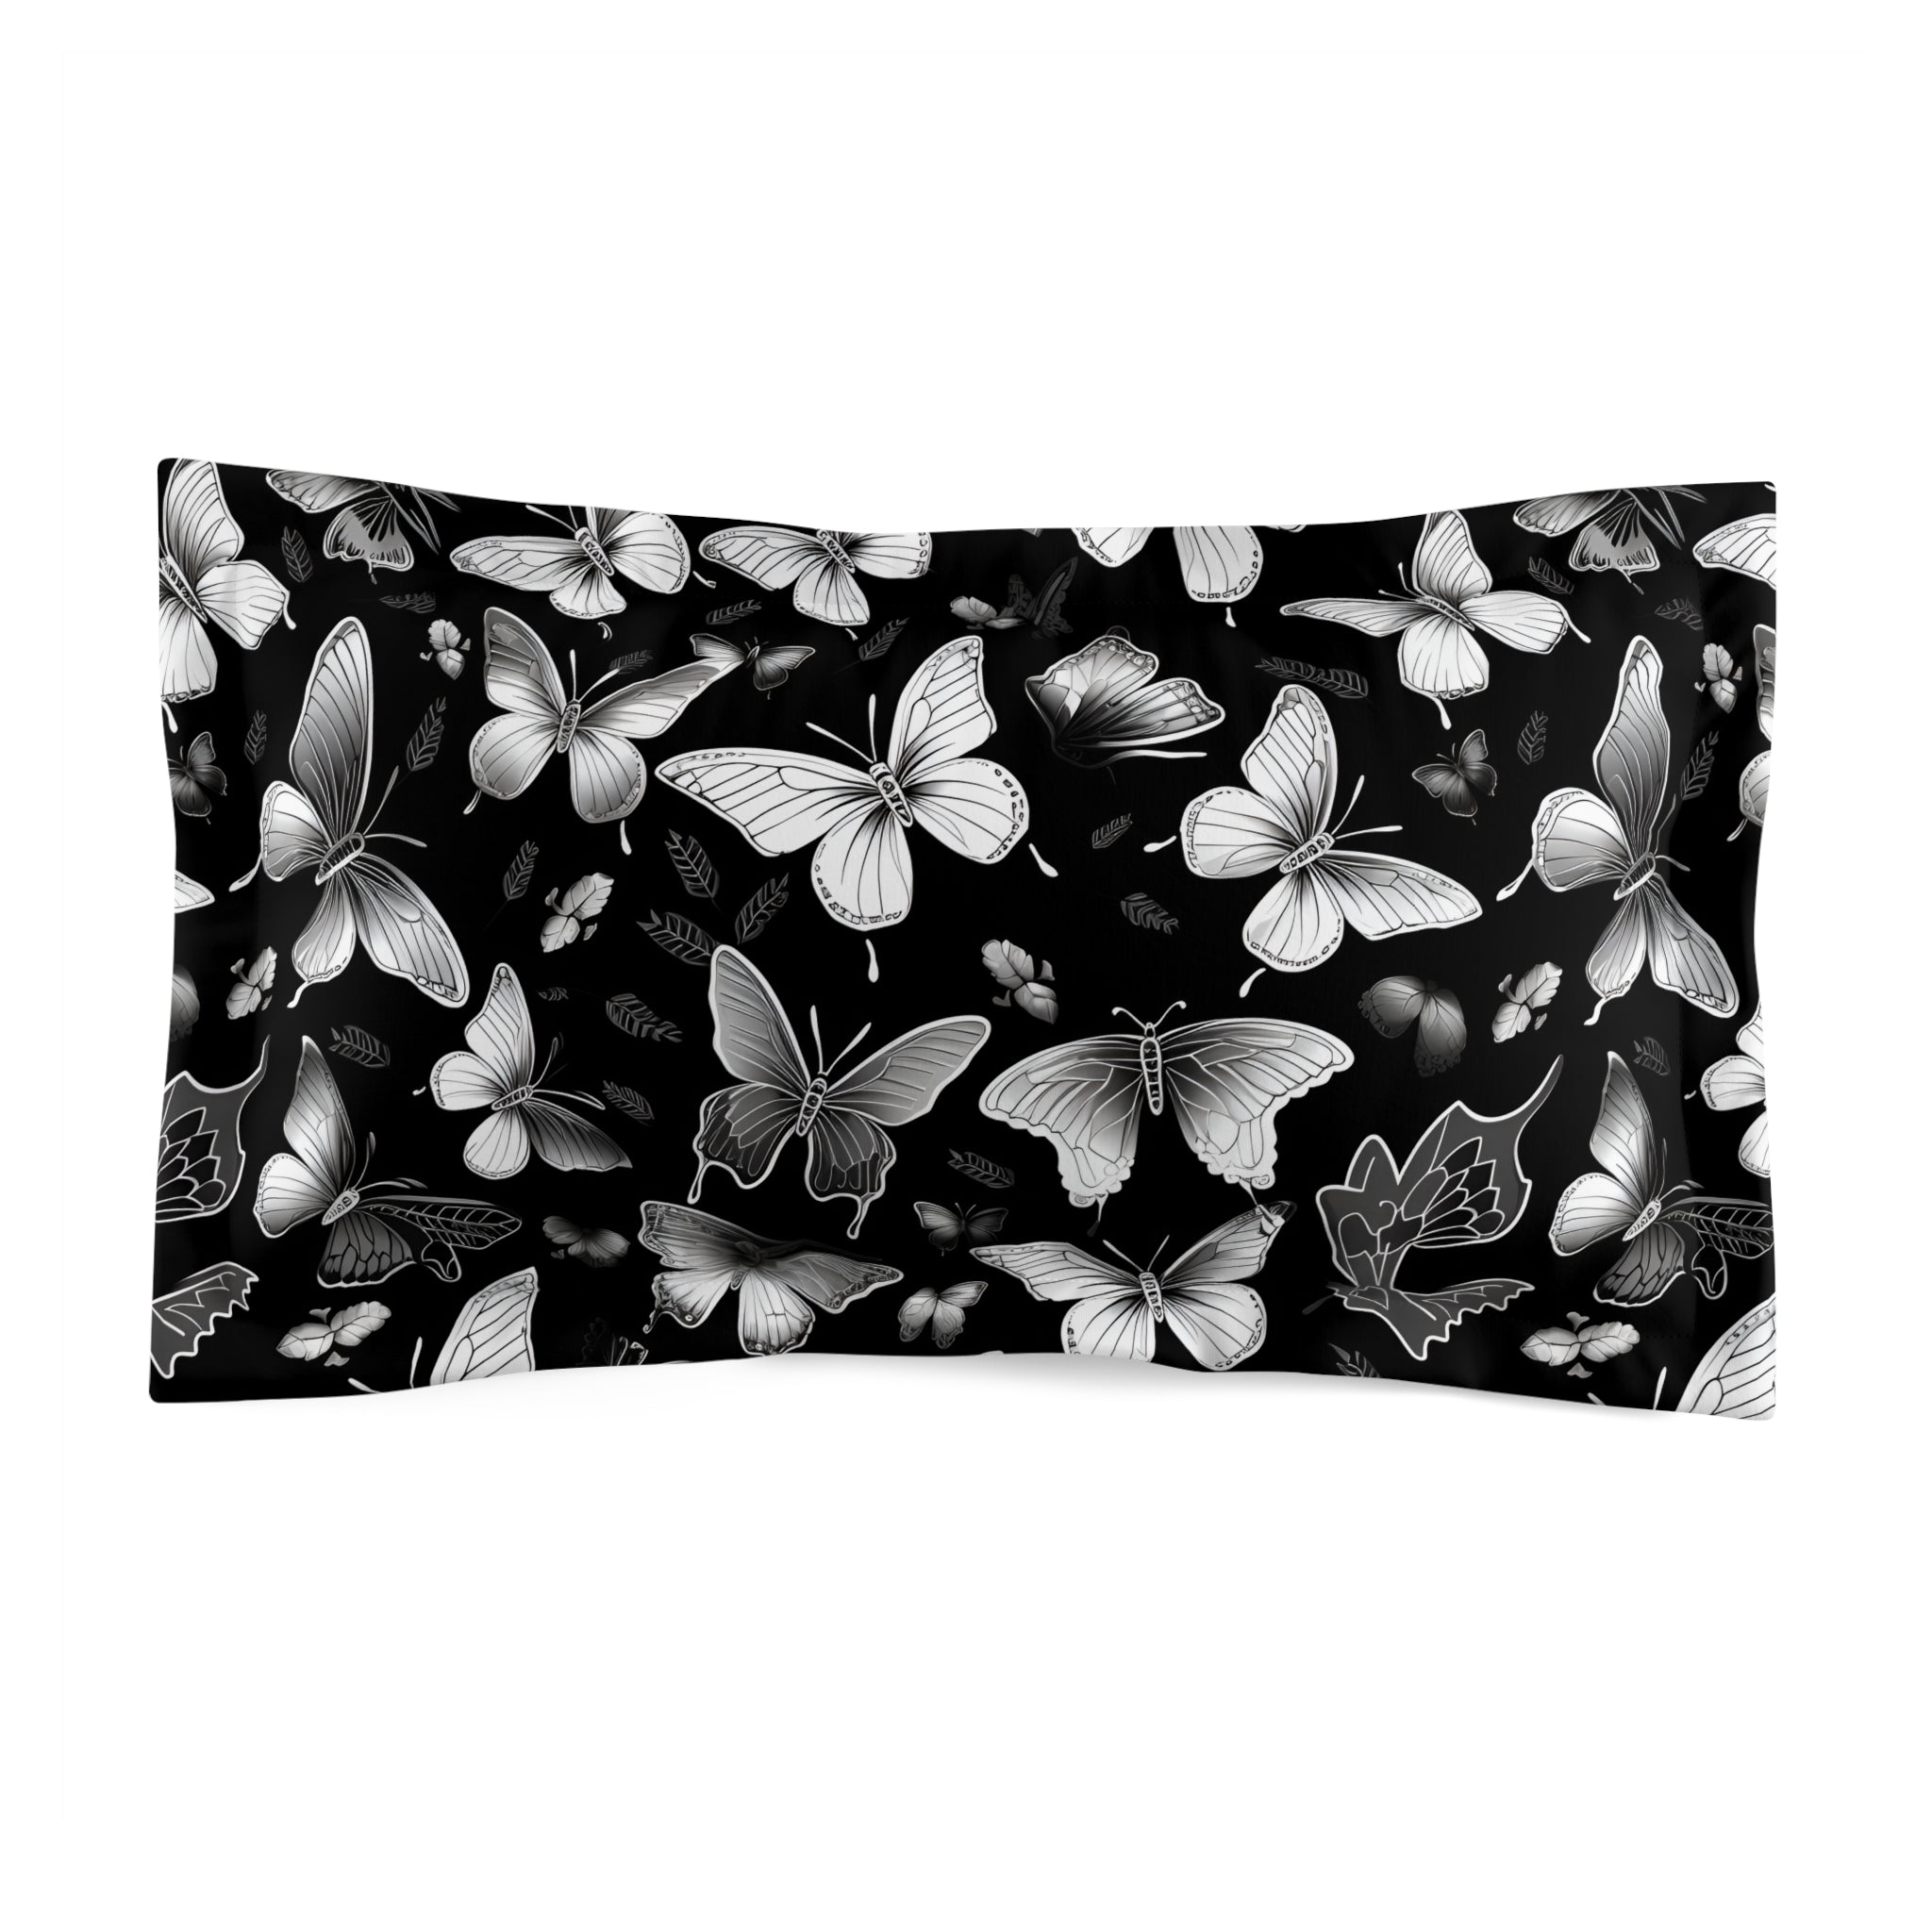 Phantom Butterfly Duvet Cover and Pillow Shams, Microfiber